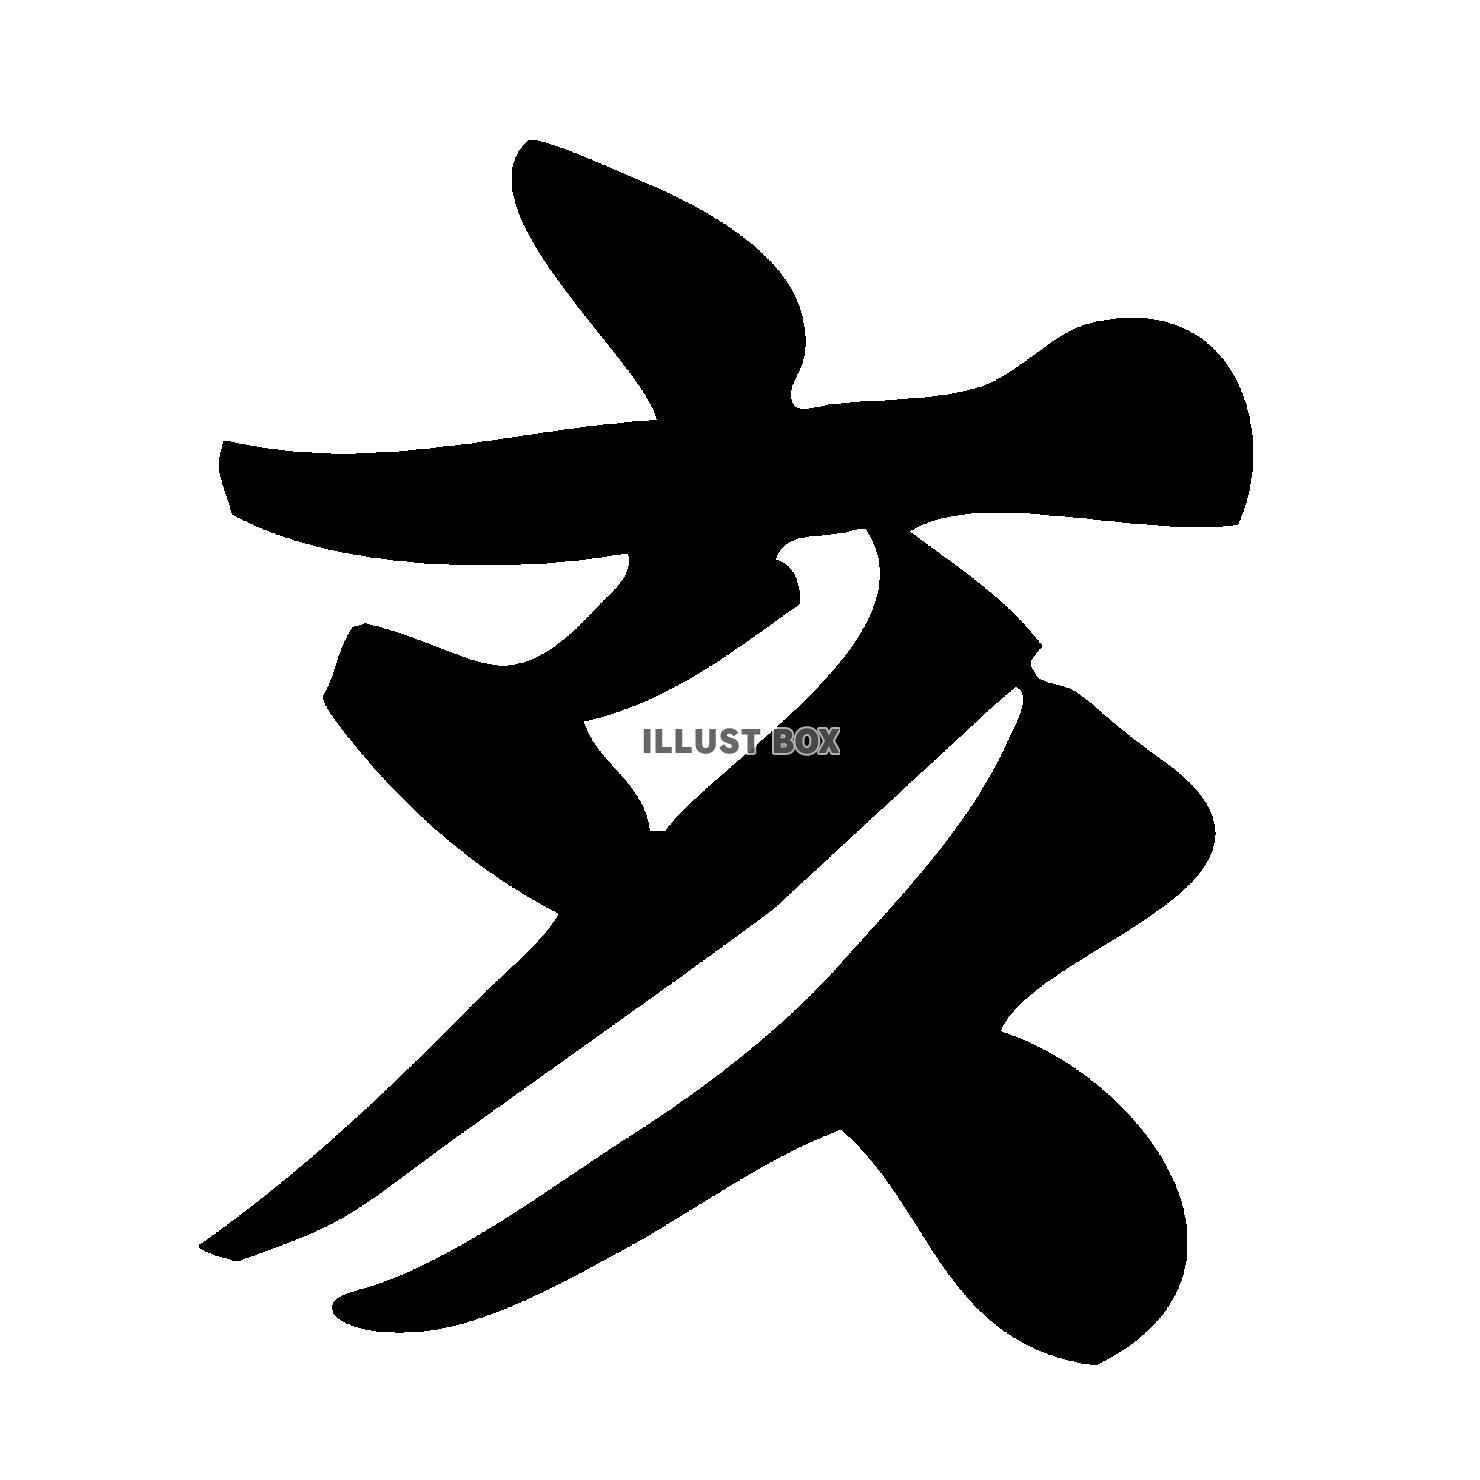 歯 という漢字一文字 のイラスト ロゴデザインの無料リクエスト